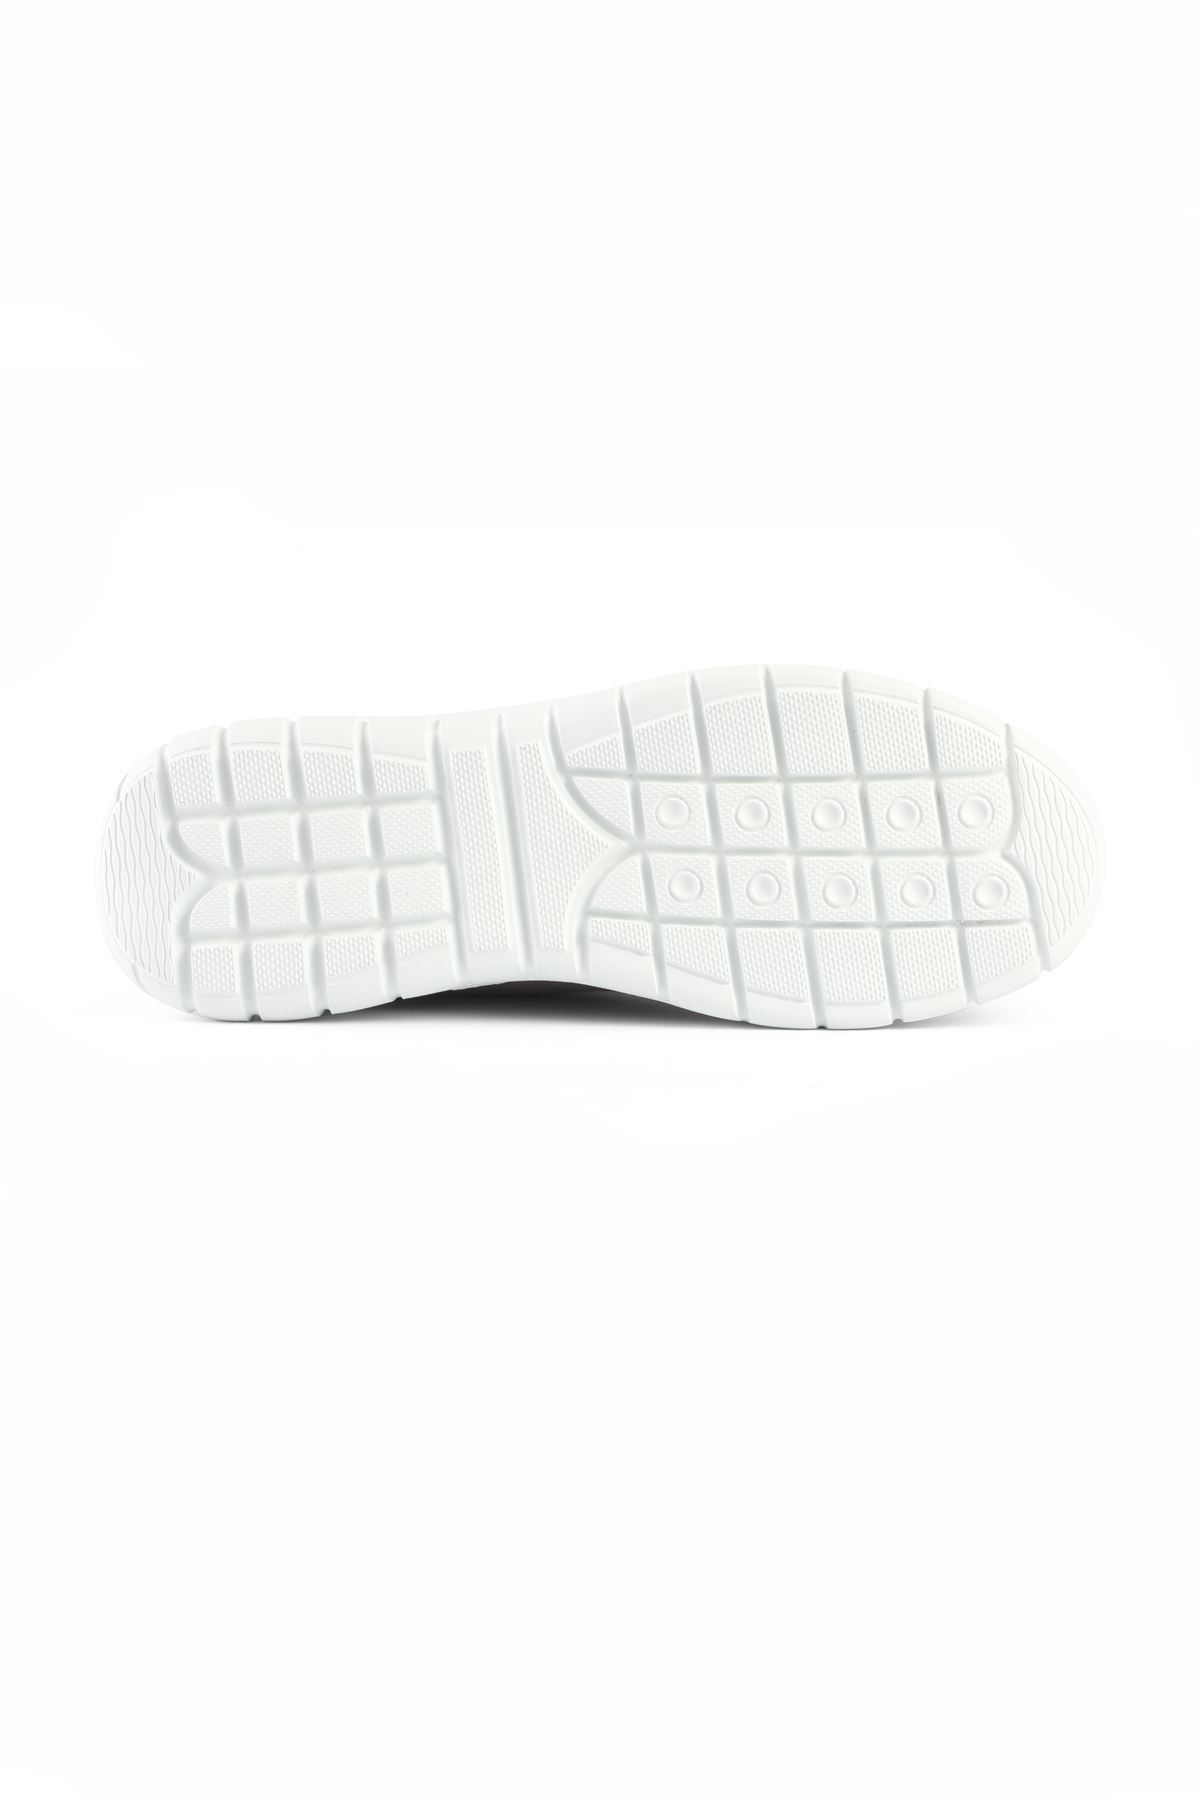 Libero LZ3414 Beyaz Spor Ayakkabı